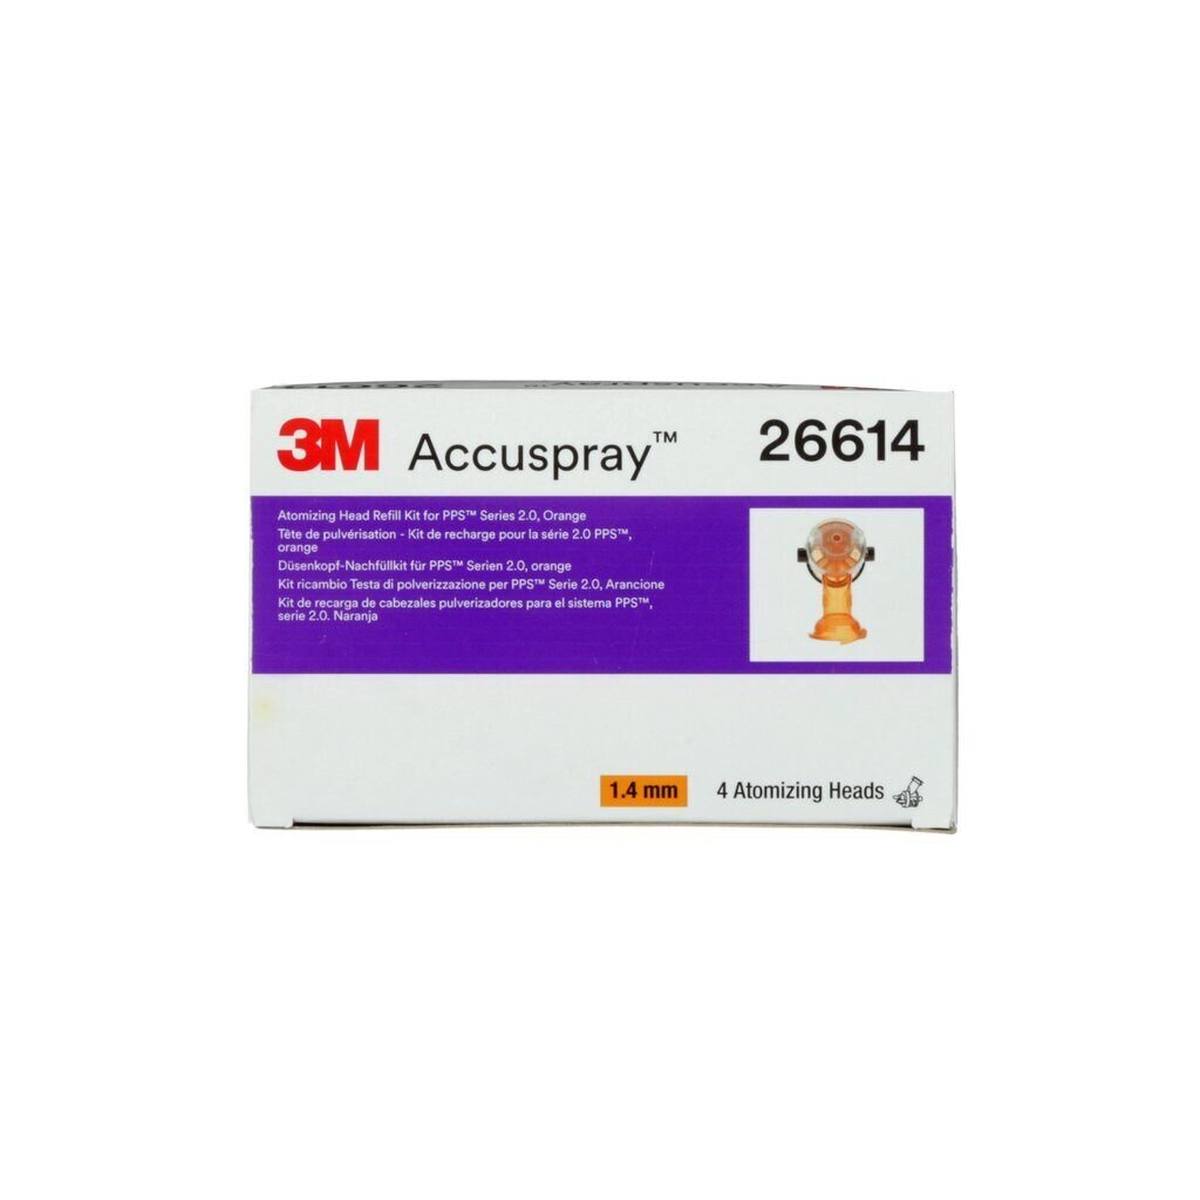 3M Accuspray Düsenkopf für PPS Serie 2.0, 1.4 mm, Orange, 26614 (Pack=4Stück)